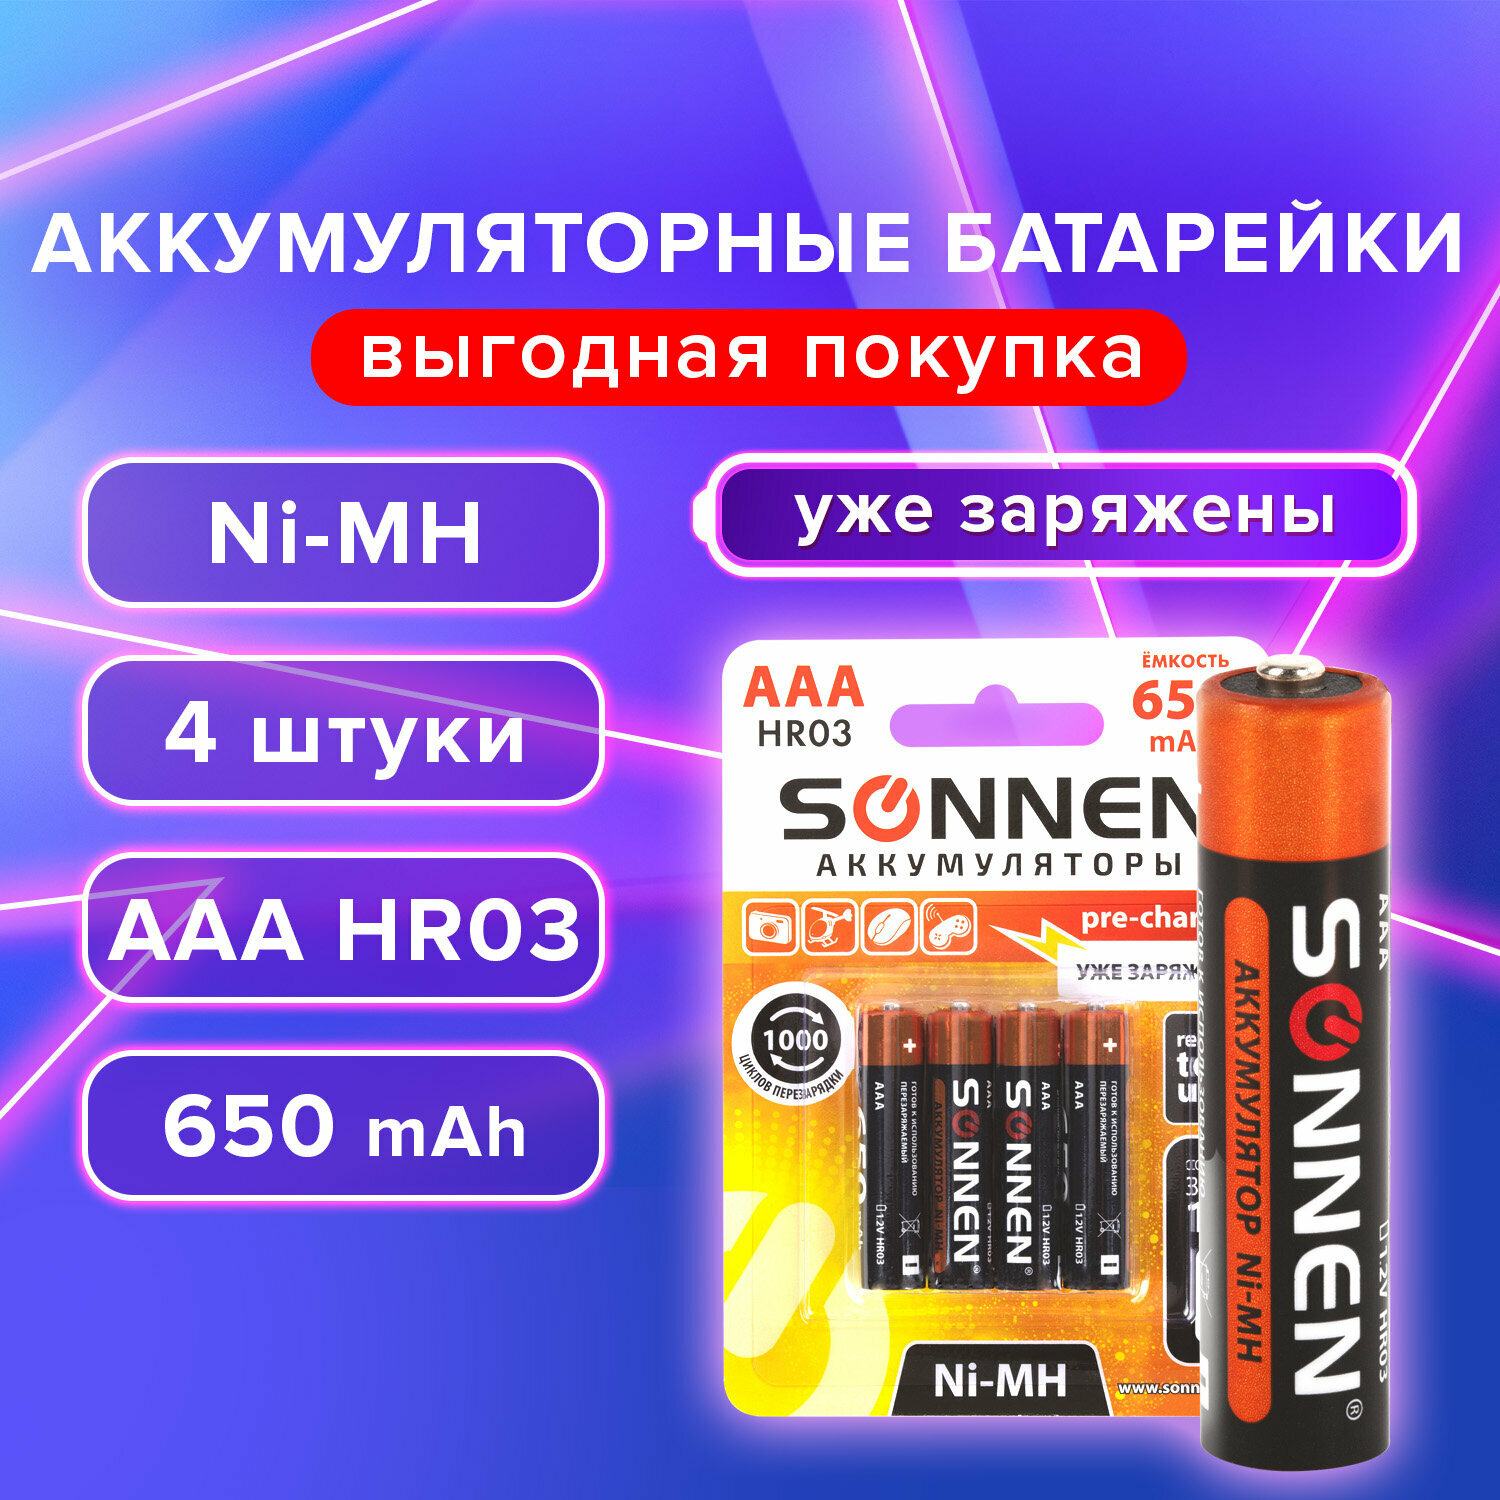 Аккумуляторные батарейки мизинчиковые, многоразовые Комплект 4 штуки, Ааa (HR03), 650 mAh, Sonnen Ni-Mh, в блистере, 455609